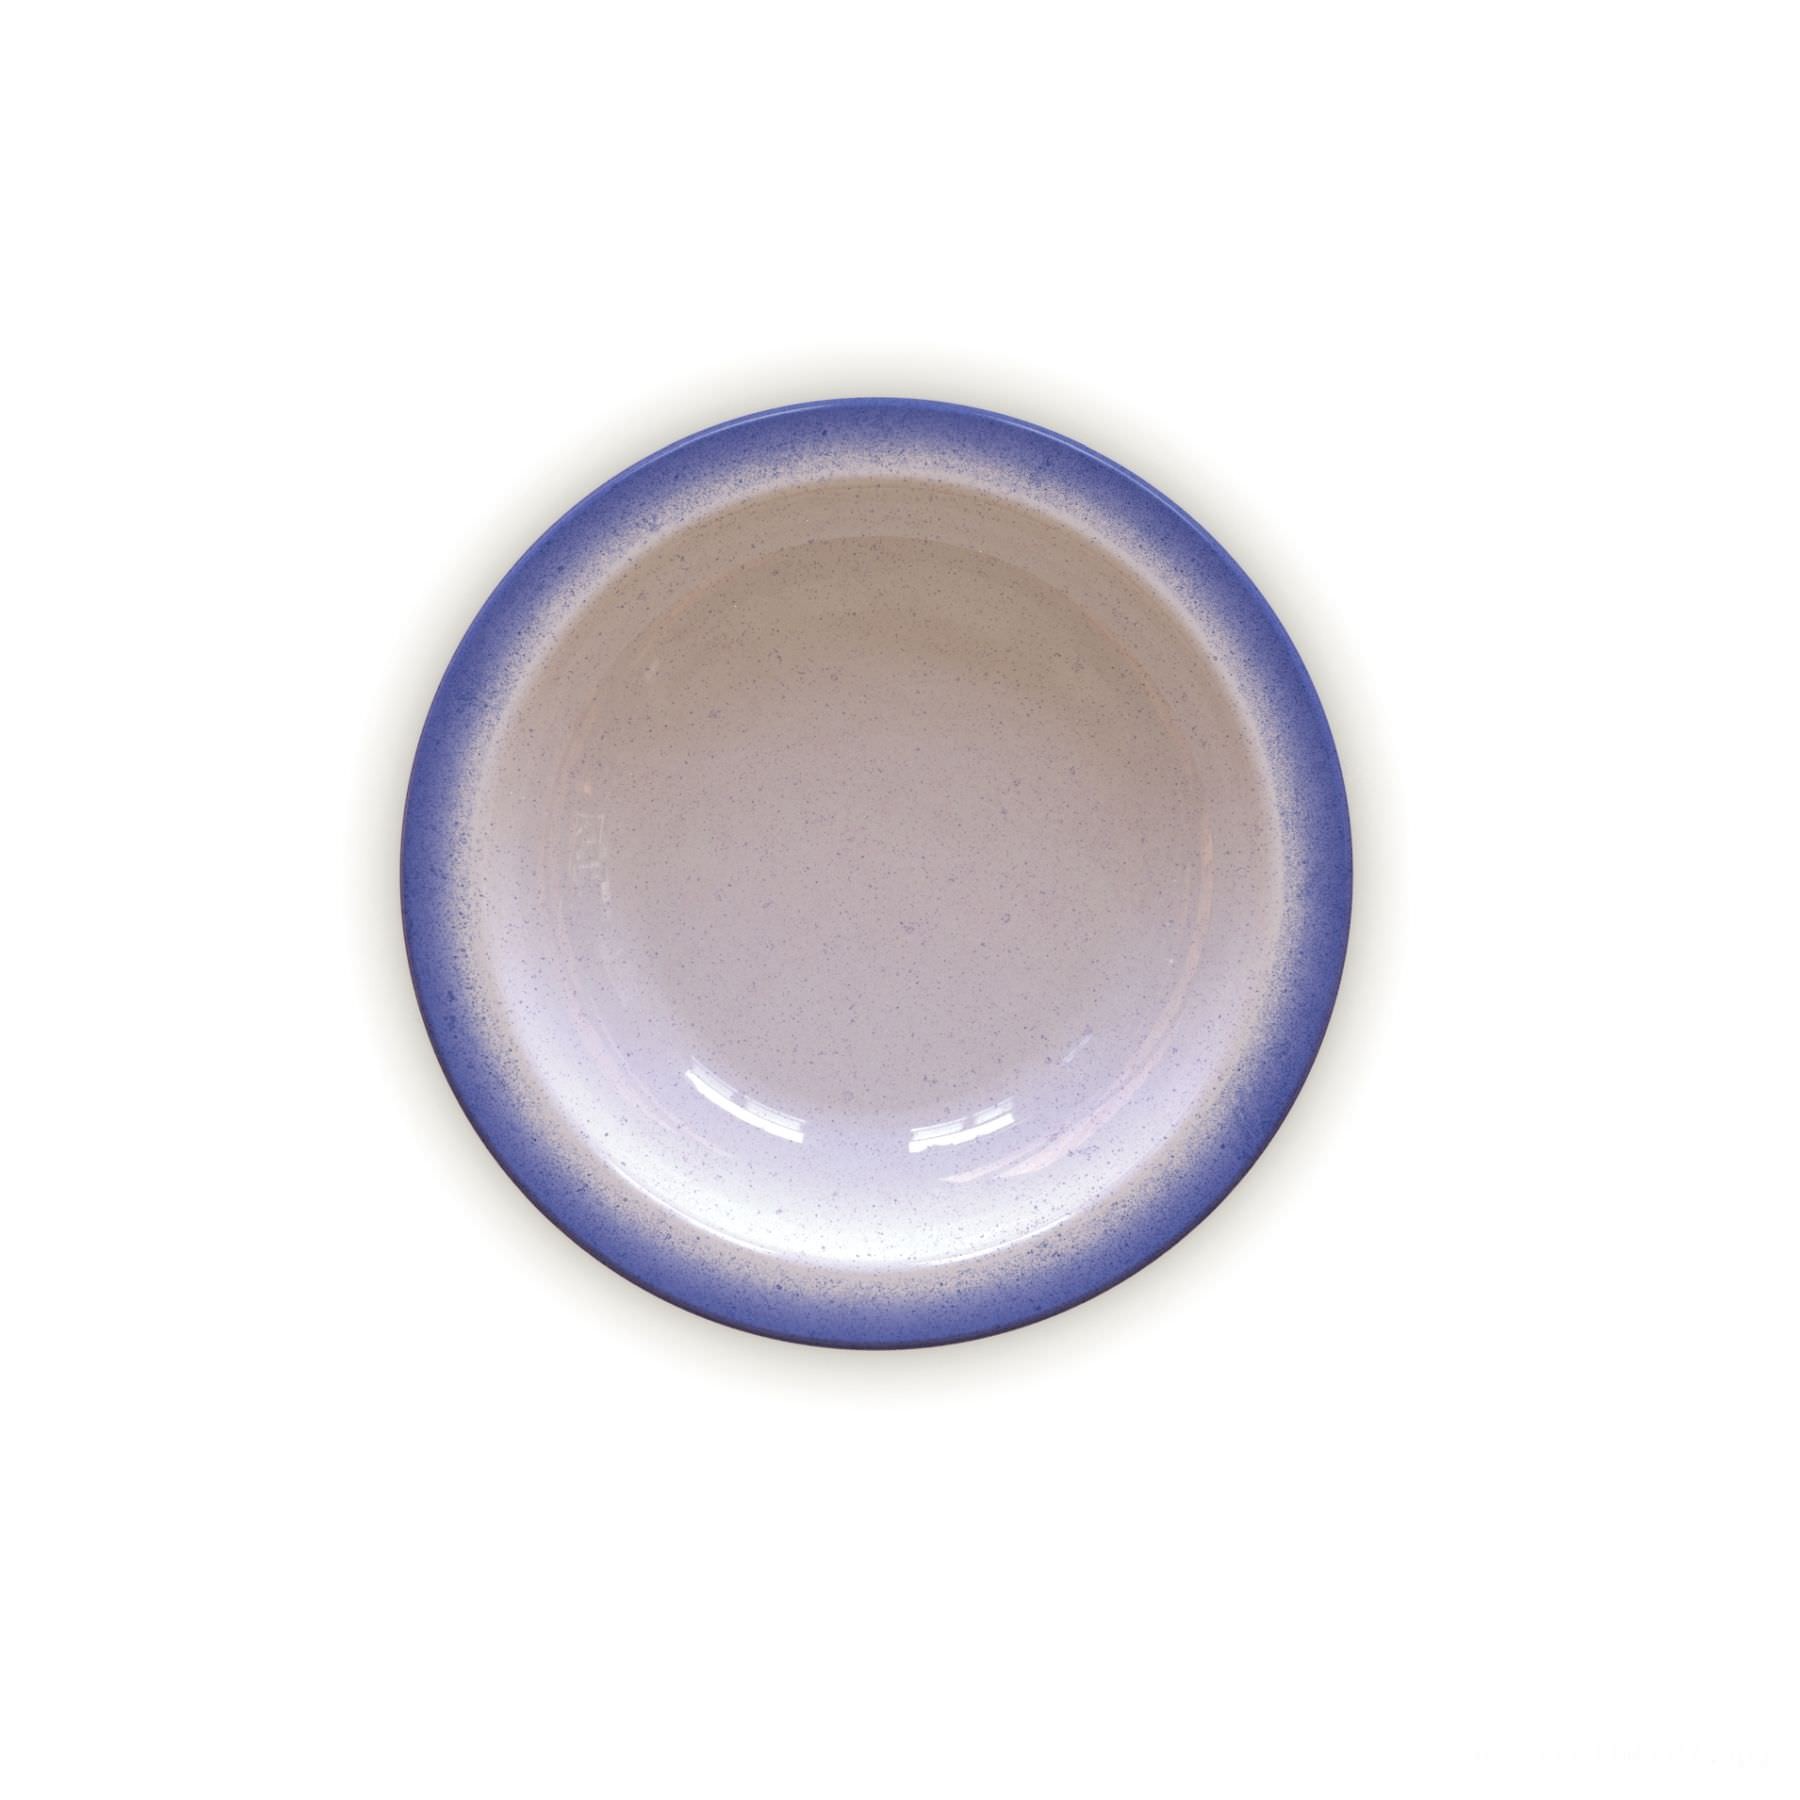 Prato Fundo Rústico Azul em Porcelana Decorada 22 cm